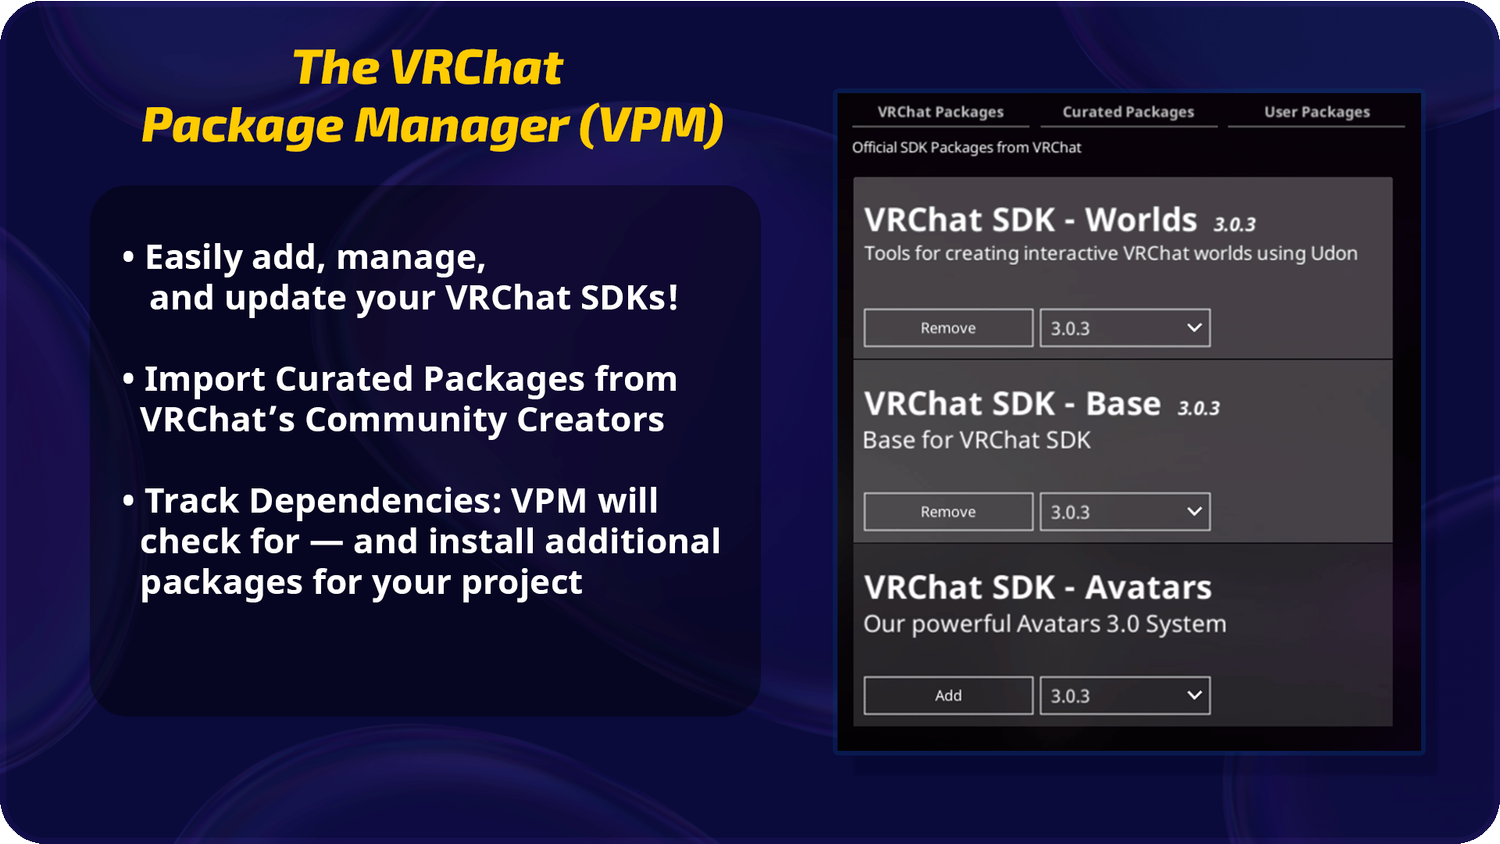 VRChatパッケージマネジャー（VPM）
・VRChat SDKを追加、管理、更新できます！
・VRChatコミュニティークリエイターからの精選されたパッケージを導入
・前提を管理：VPMが自動的に確認し、必要なパッケージを導入します